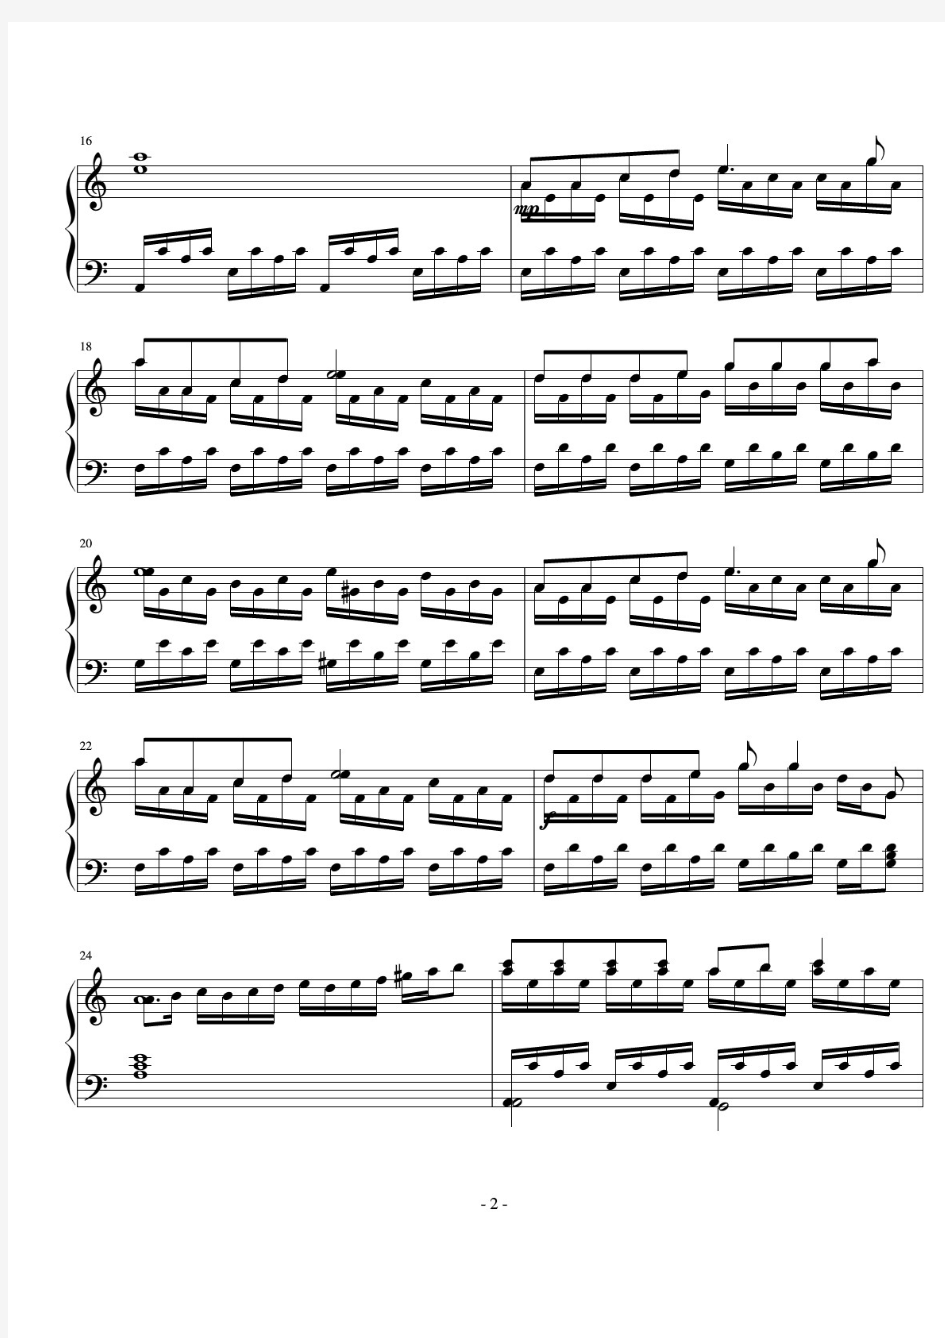 歌声与微笑 钢琴谱 正谱 五线谱 钢琴谱 乐谱.pdf